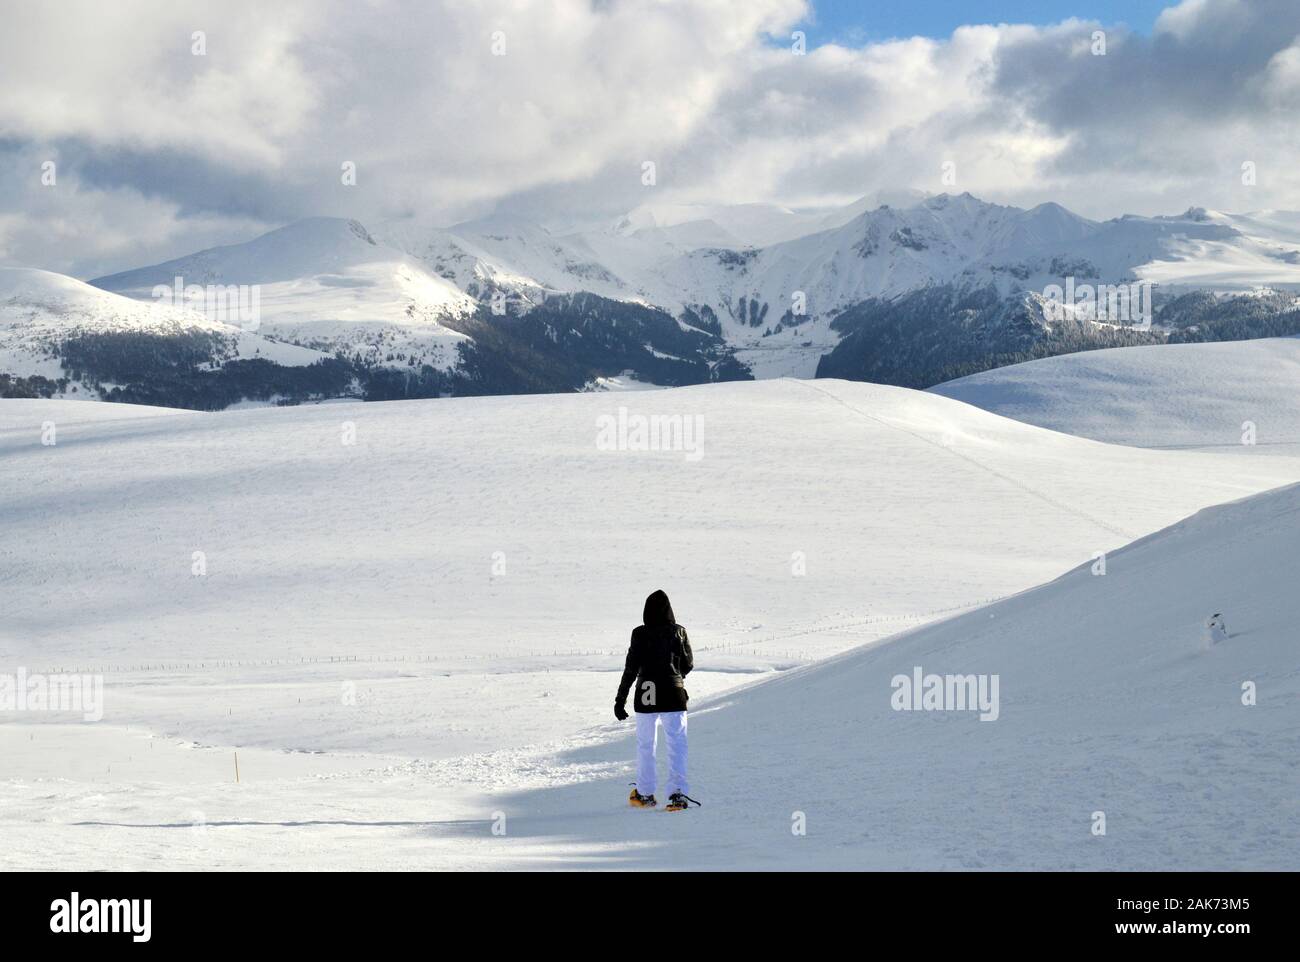 Un escursionista con racchette da neve passeggiate sulla neve, sulla sommità di un nevoso montagna vulcanica Foto Stock